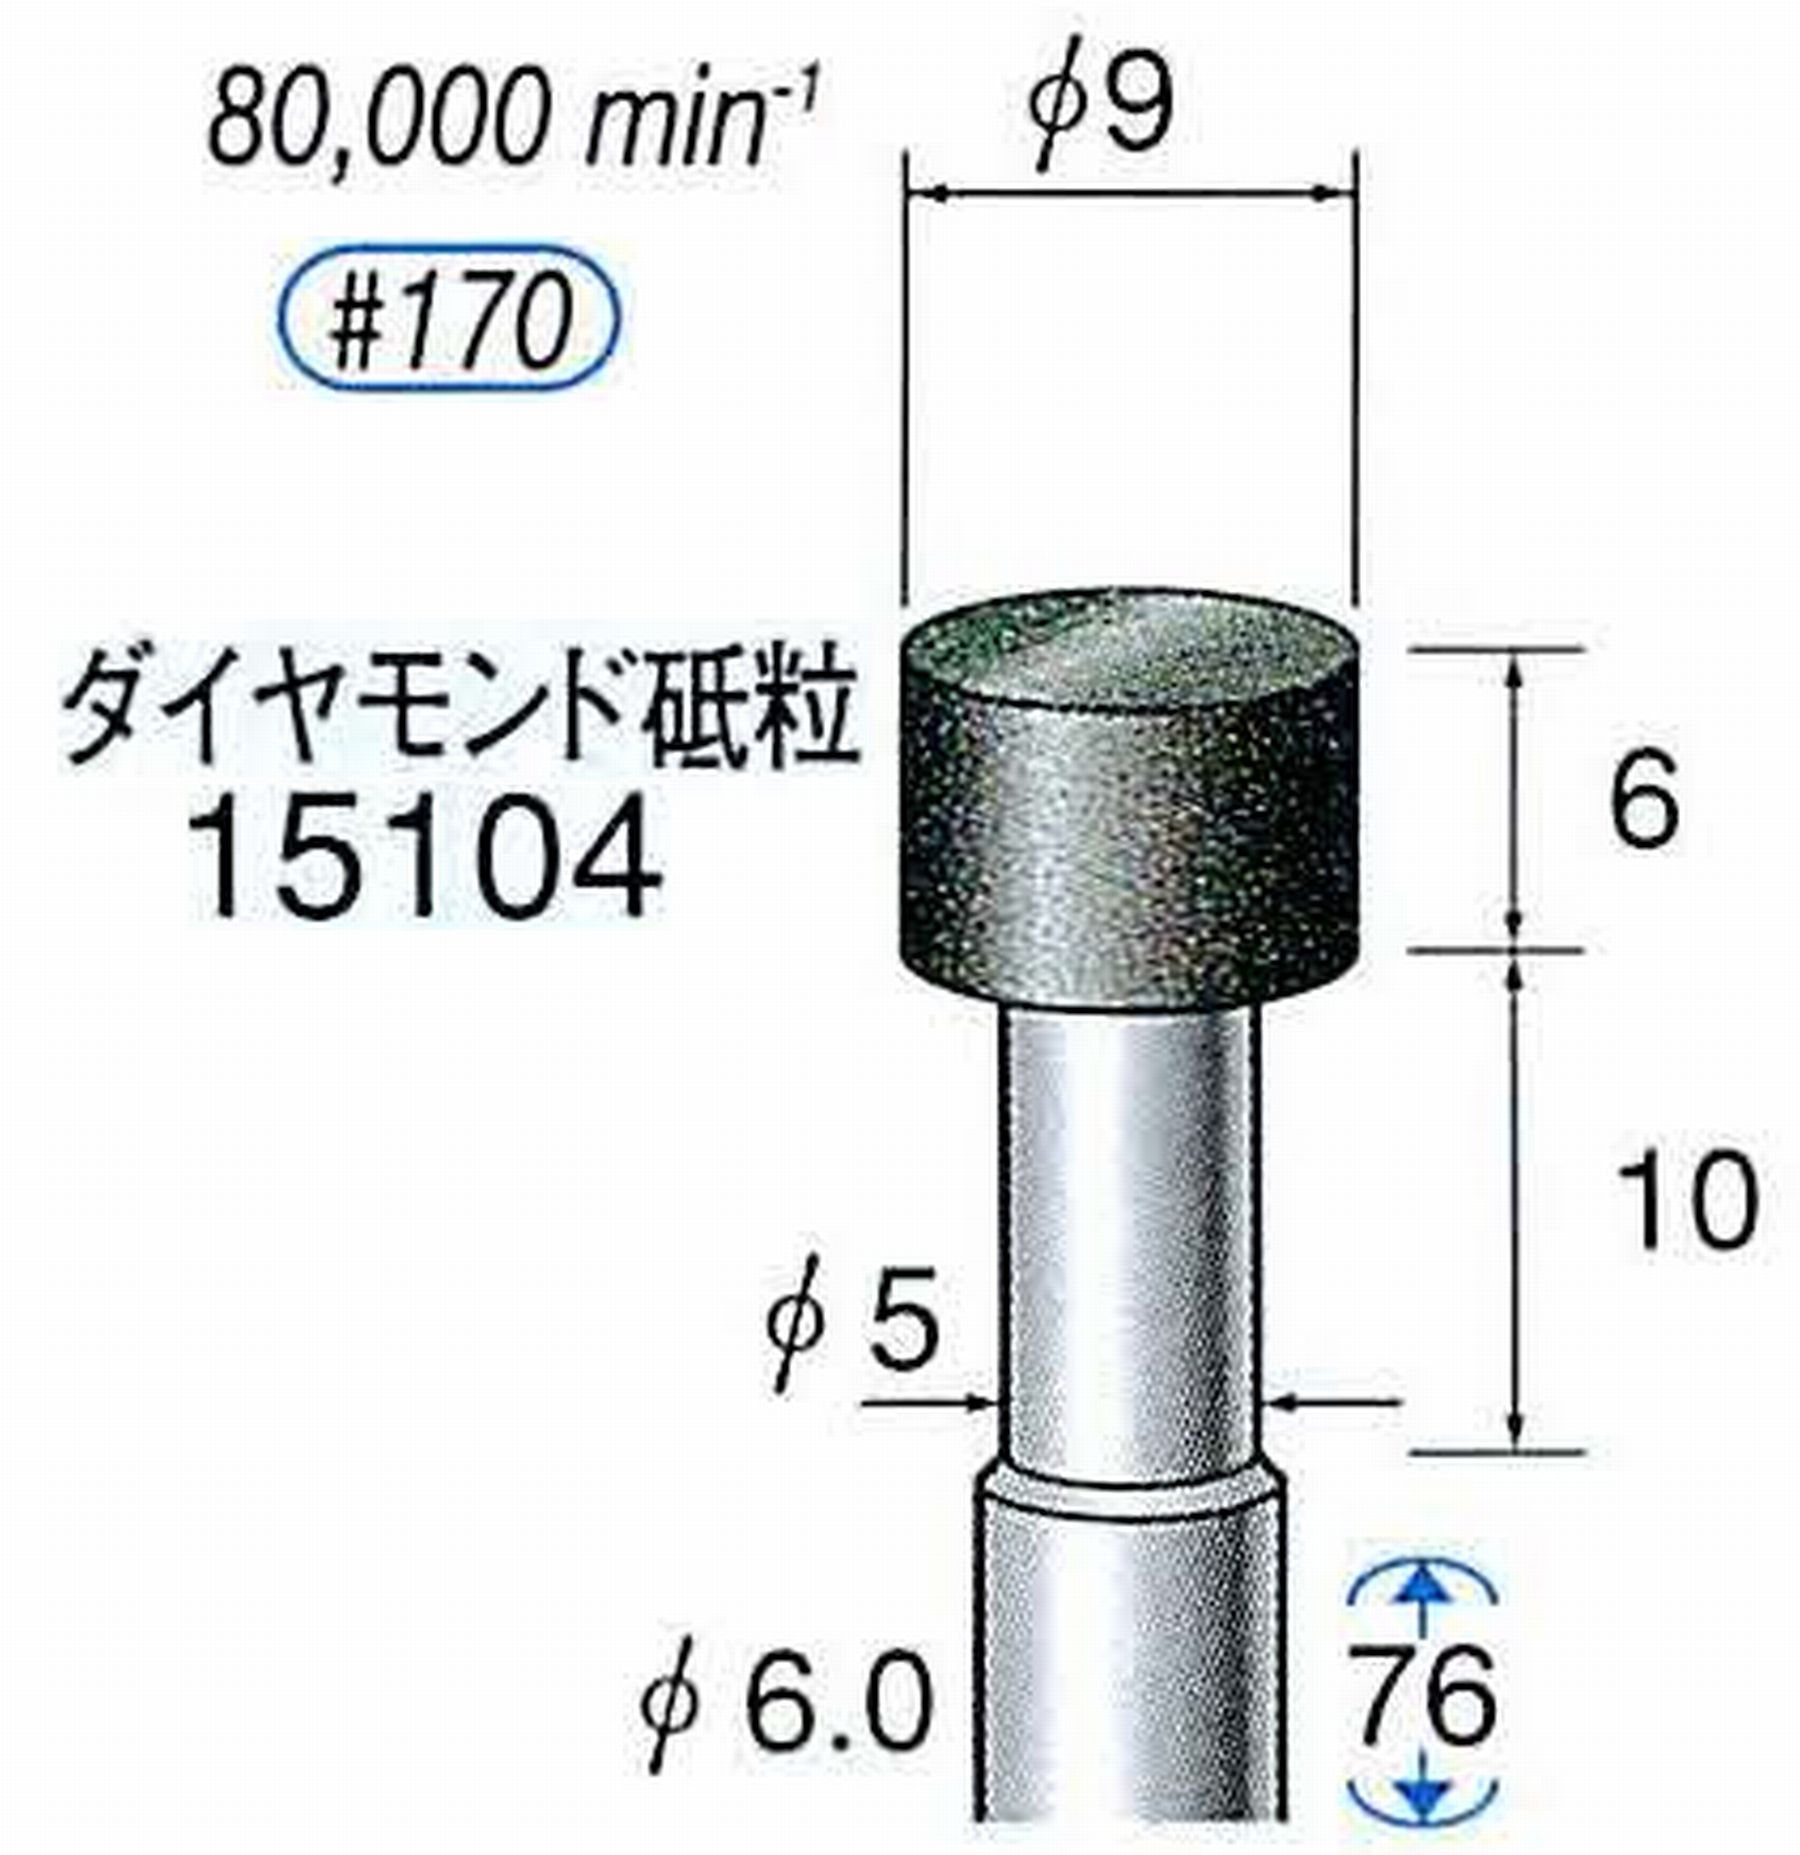 ナカニシ/NAKANISHI レジノイドダイヤモンド ダイヤモンド砥粒 軸径(シャンク)φ6.0mm 15104